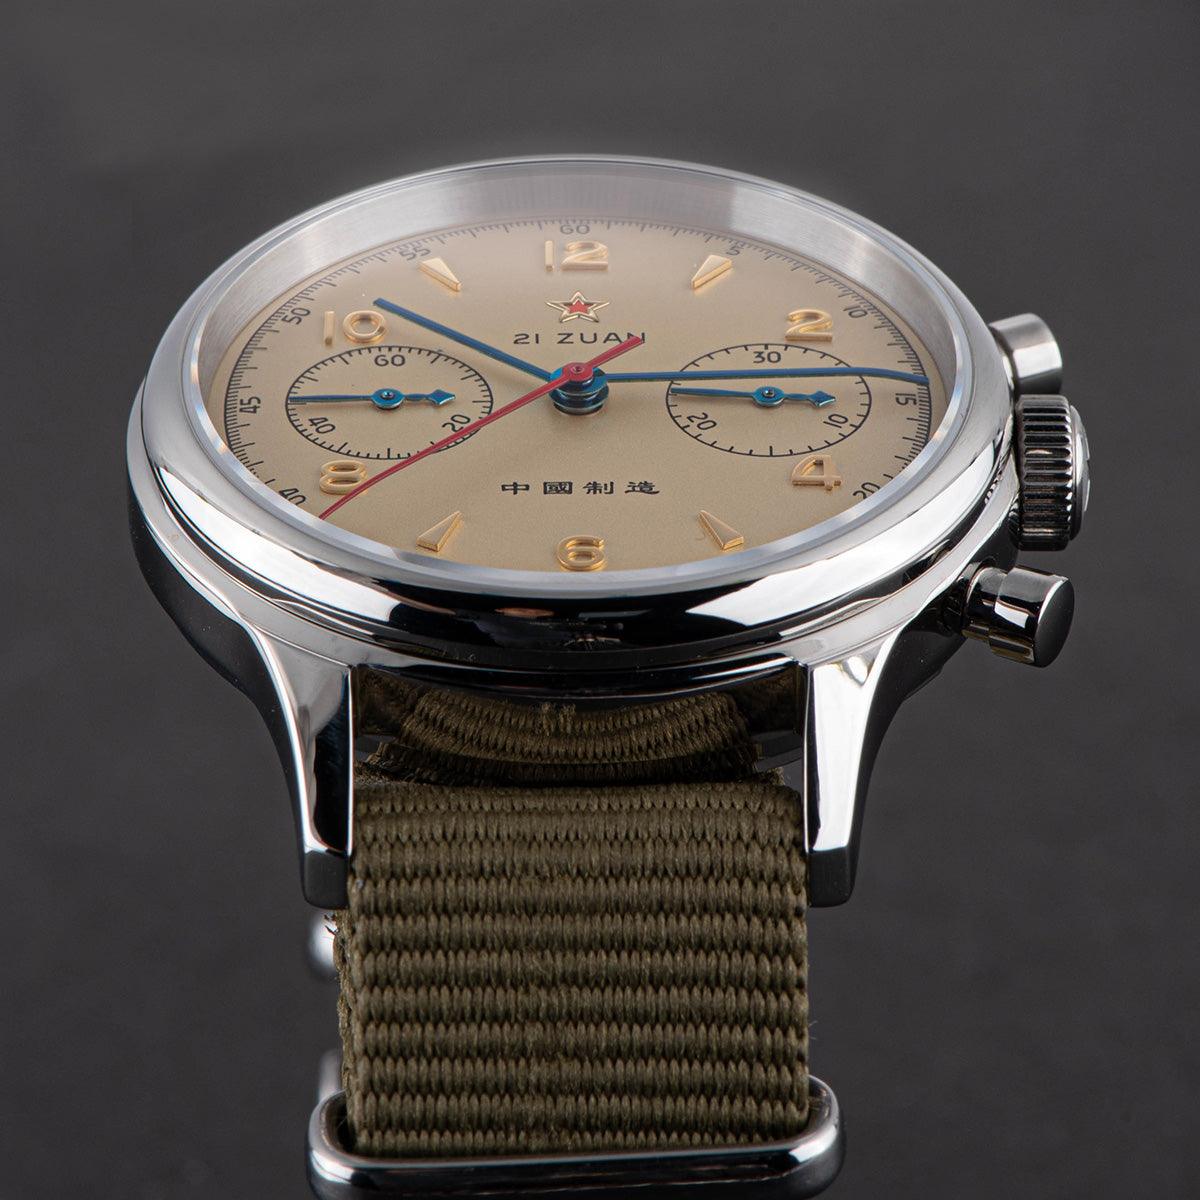 Seagull Pilot ST19 movement mechanical men's watch sapphire large dial waterproof men's watch 1963 - Murphy Johnson Watches Co.